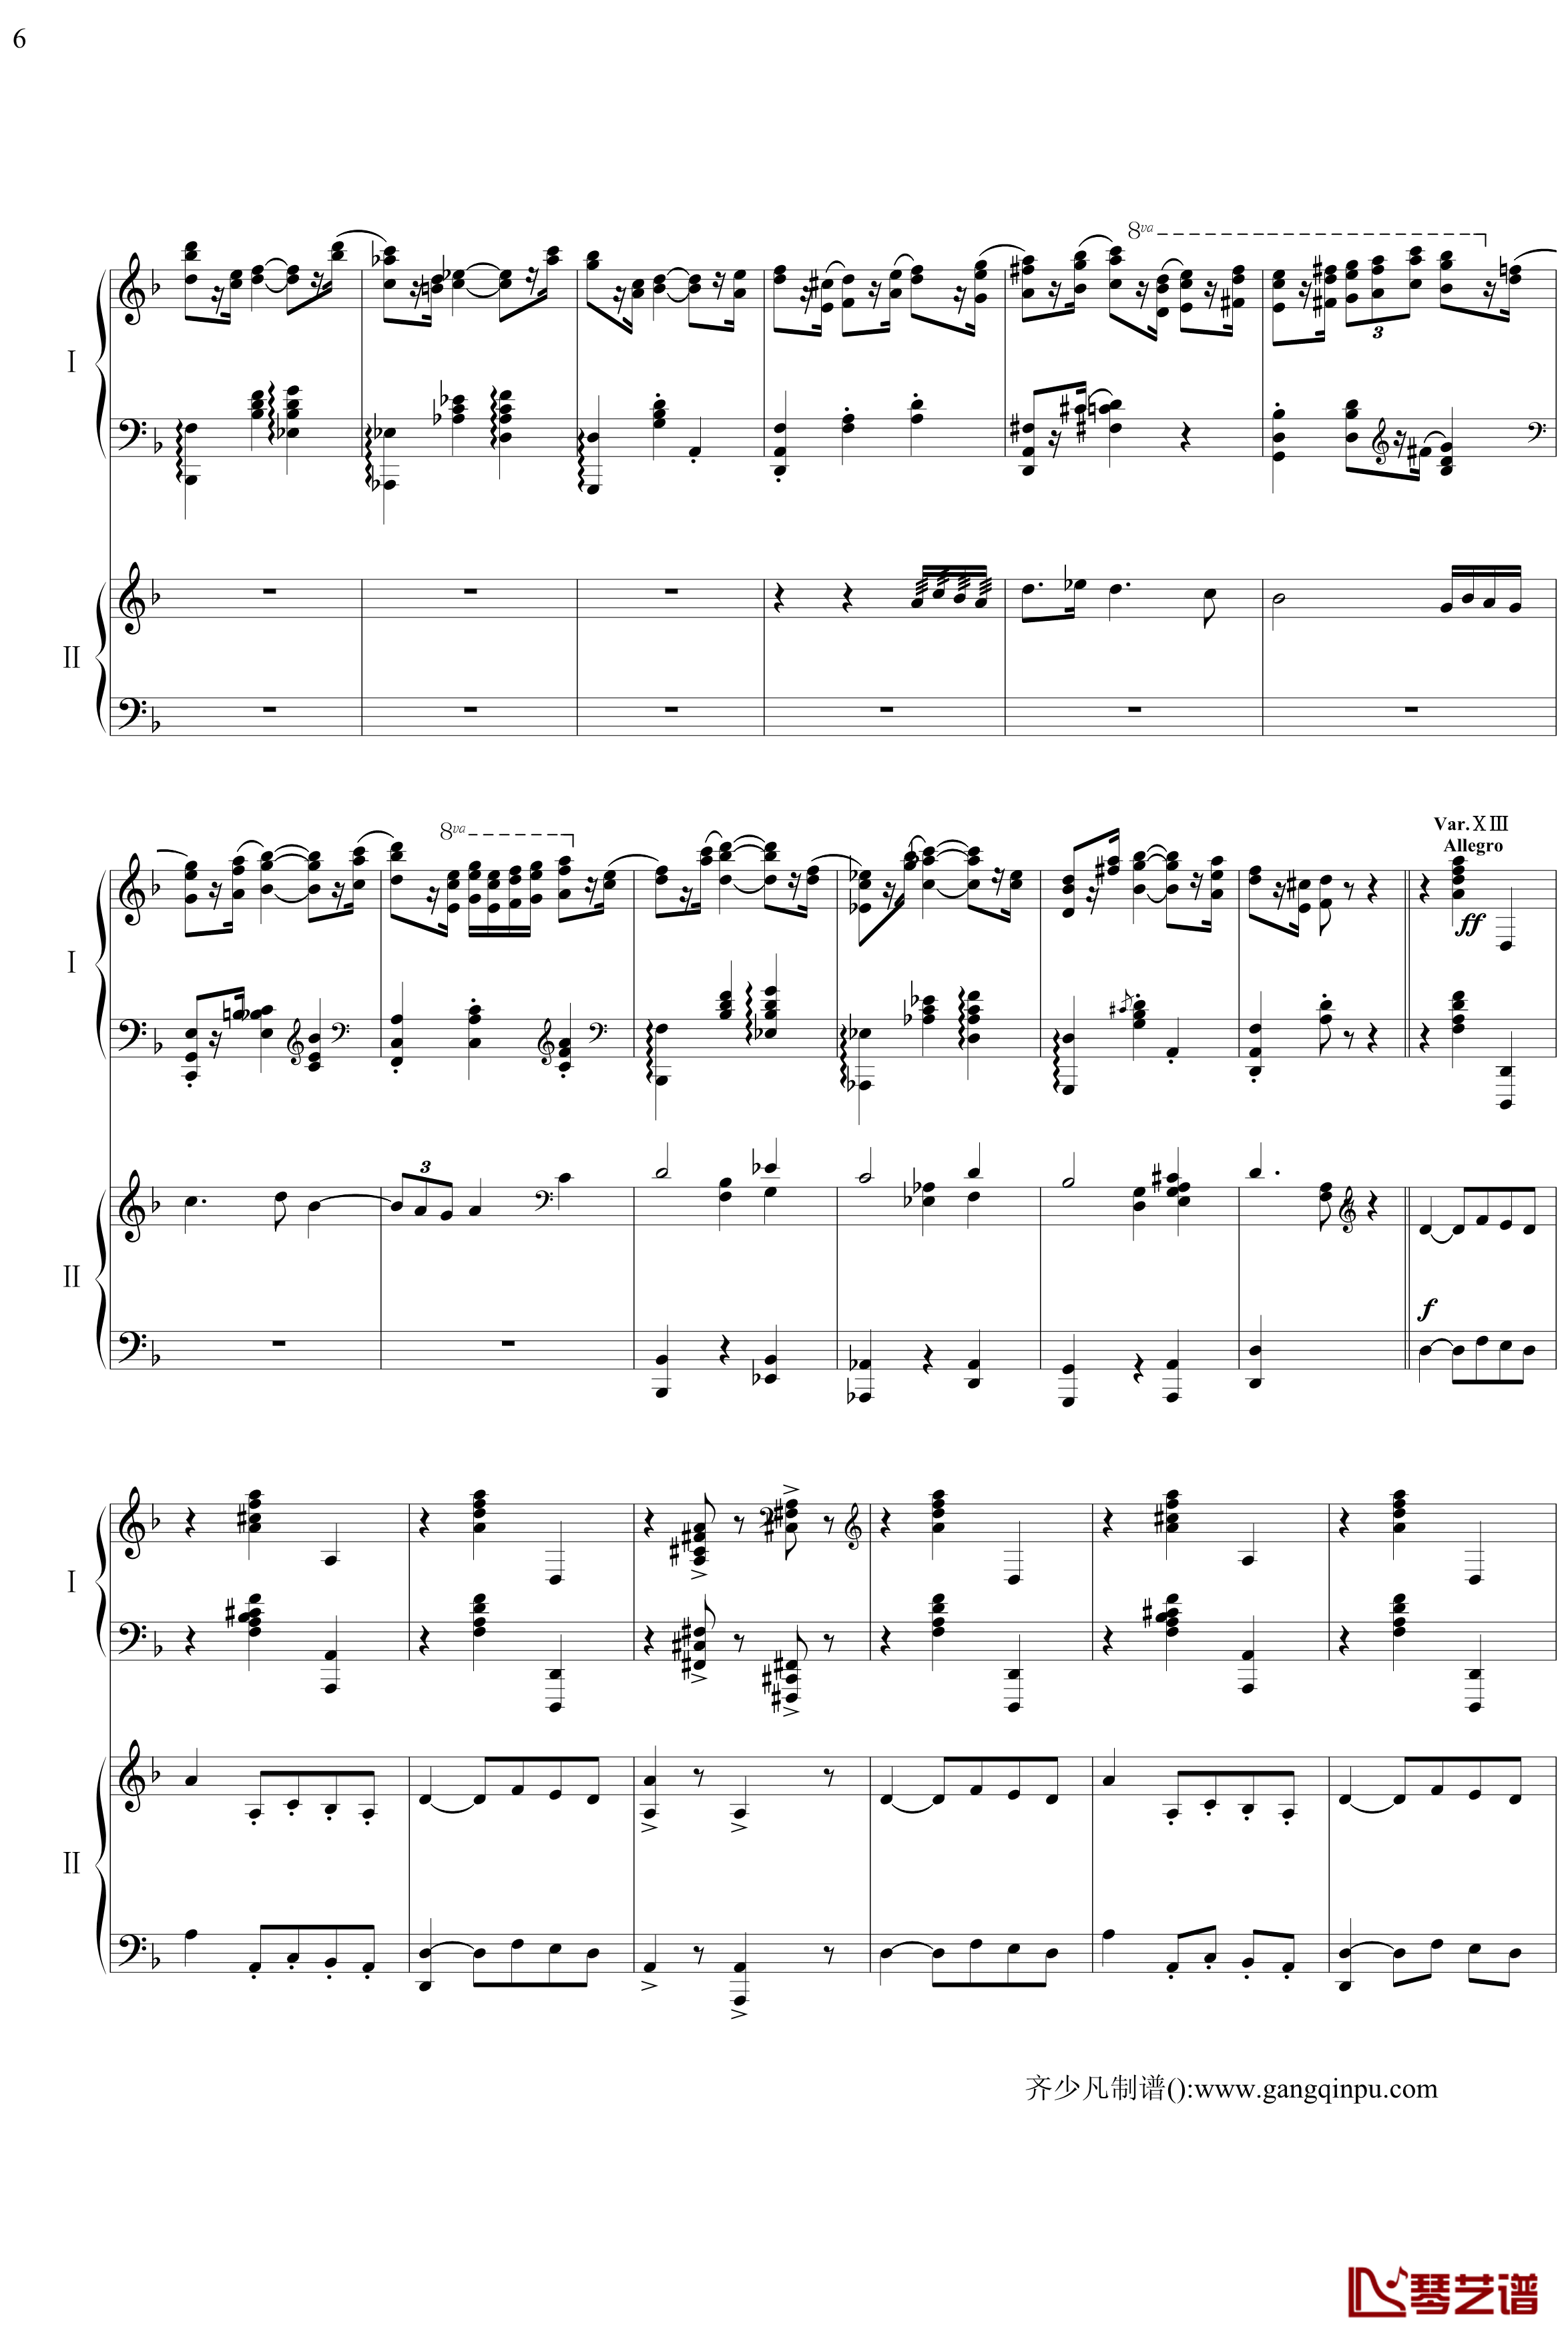 帕格尼尼主题狂想曲钢琴谱-11~18变奏-拉赫马尼若夫6